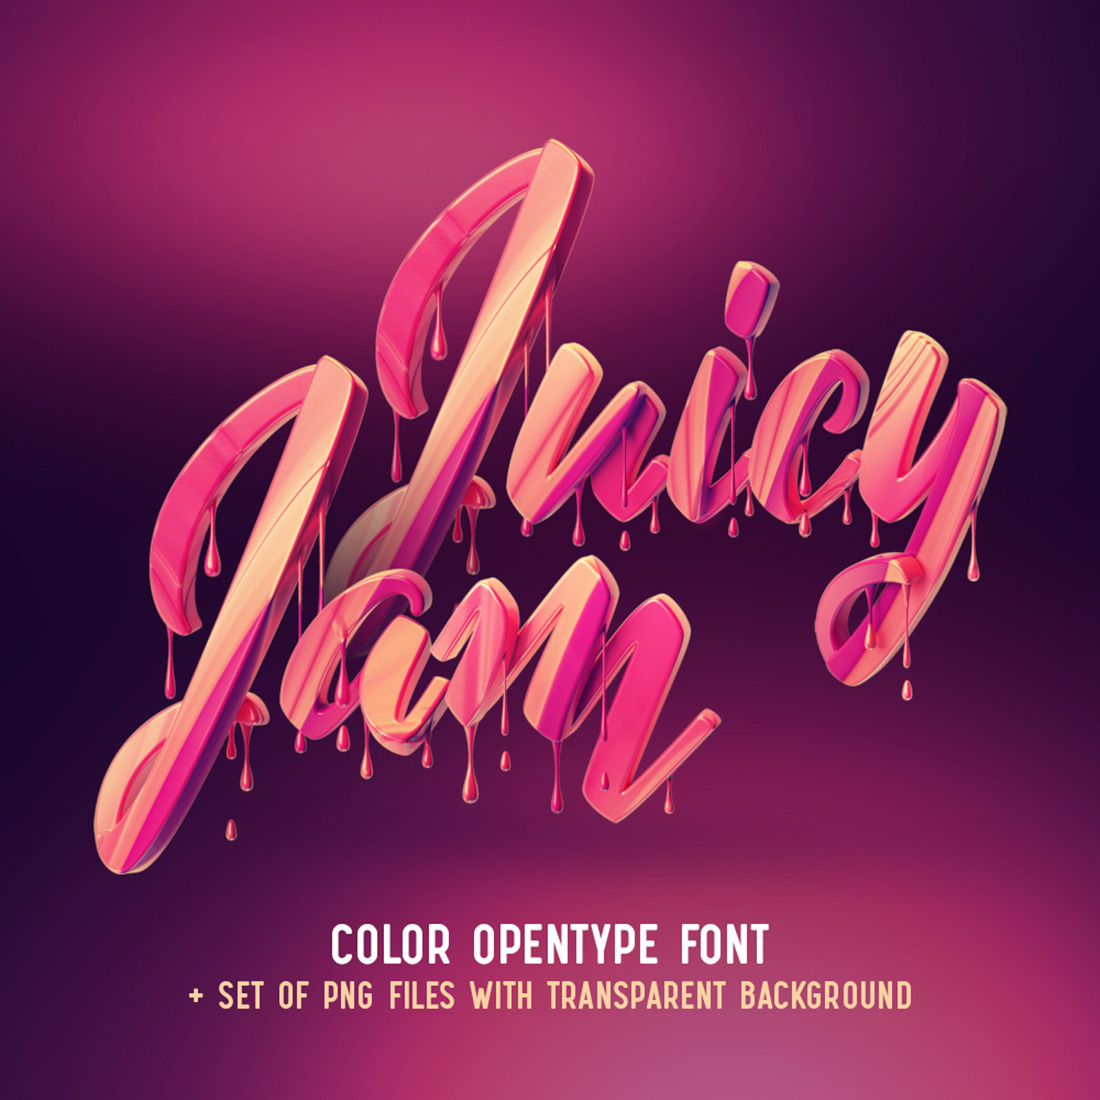 Juicy Jam – Color Bitmap Font cover image.